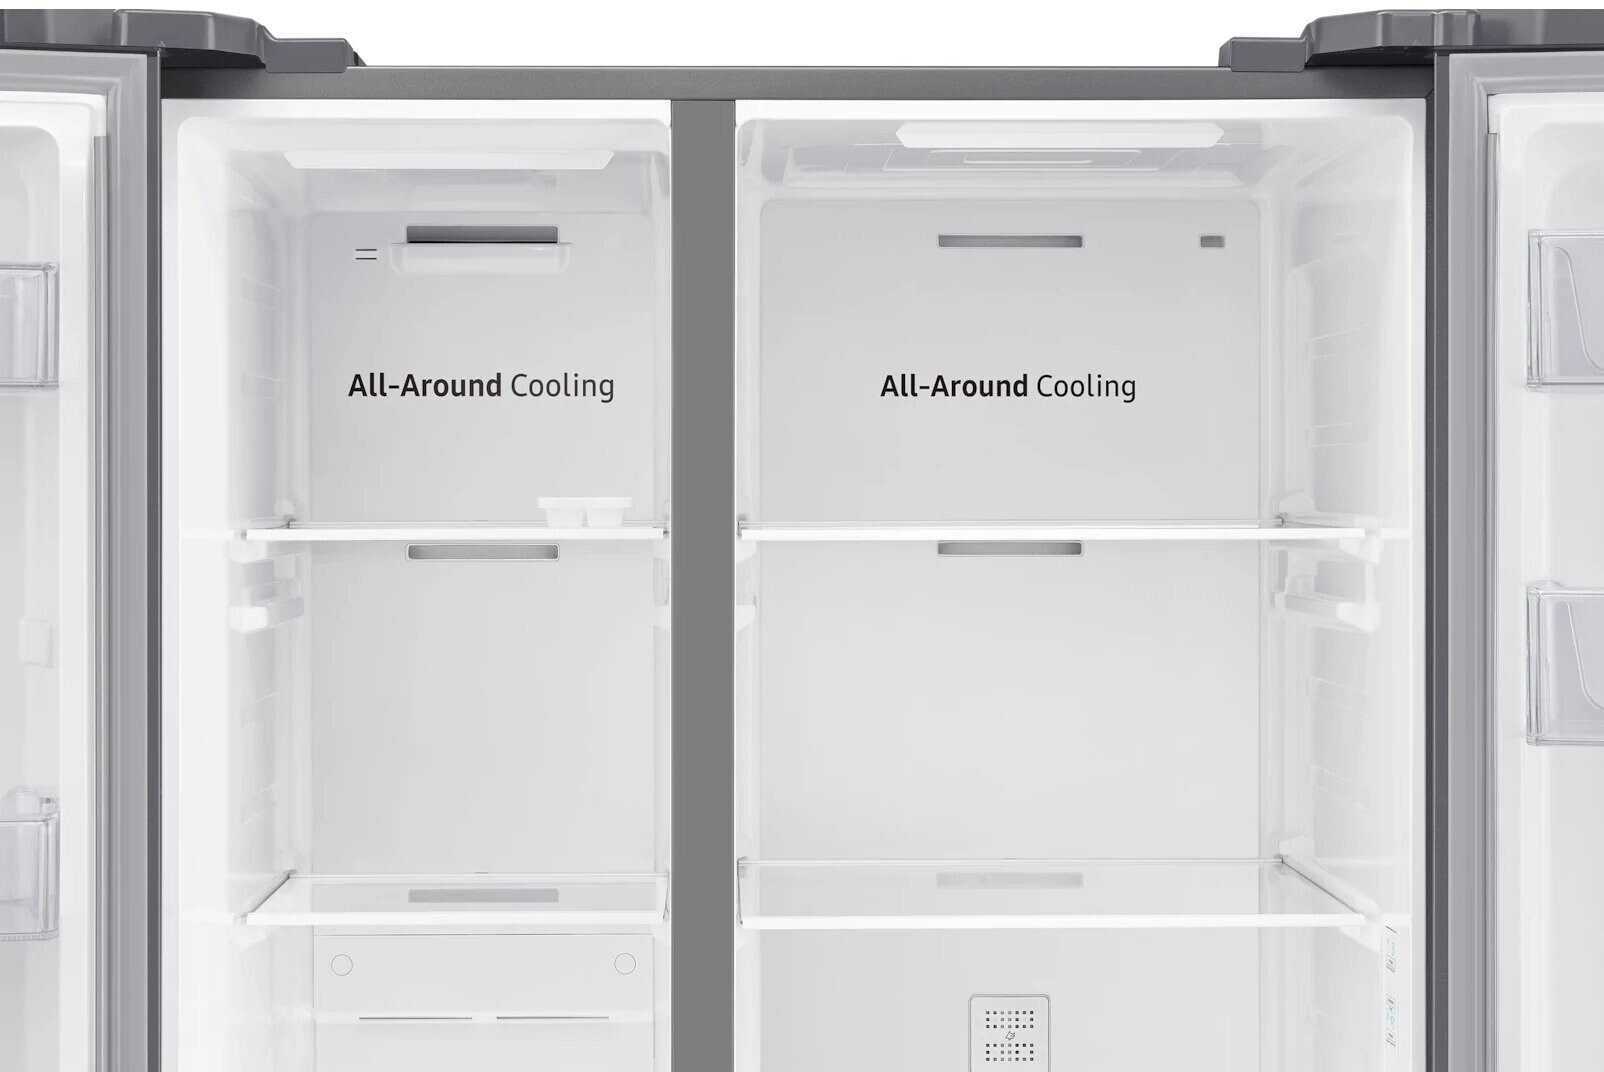 Обзор лучших инверторных холодильников на 2022 год с преимуществами и недостатками